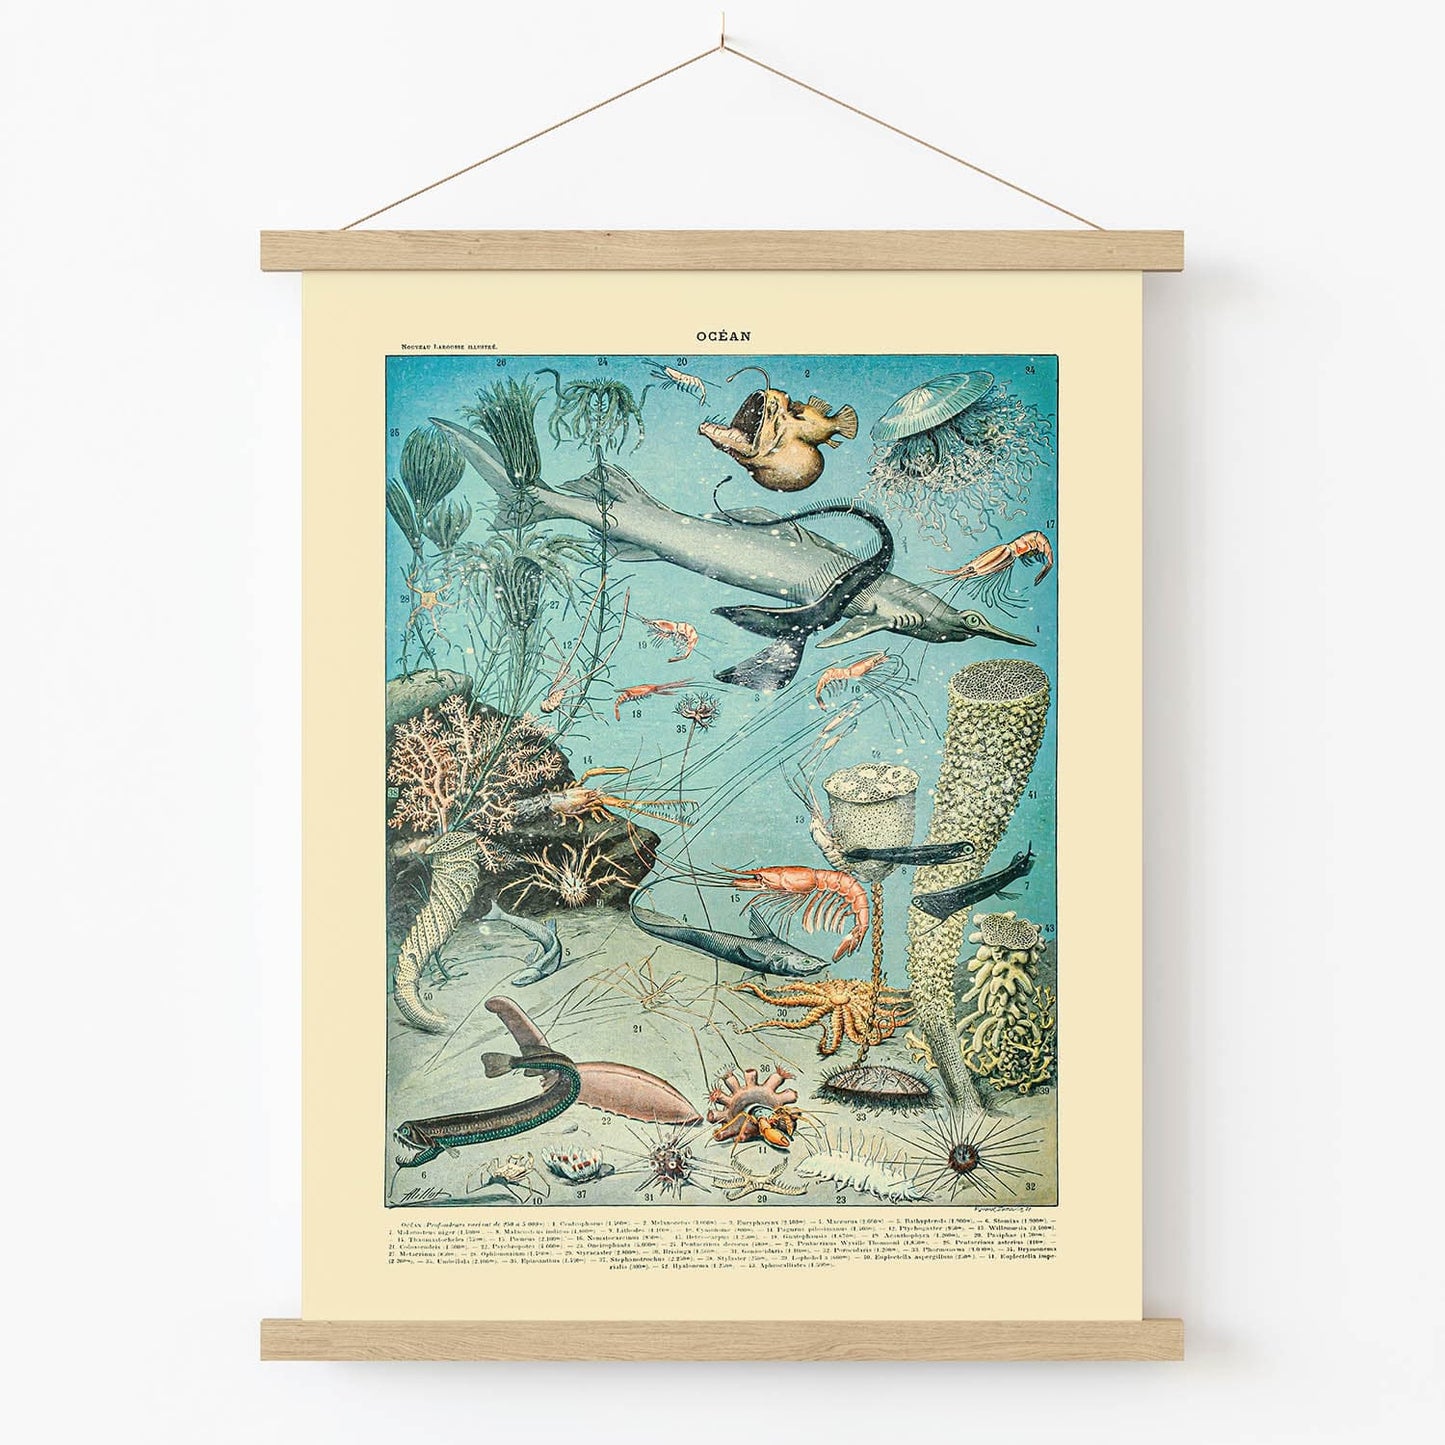 Shrimp and Sharks Art Print in Wood Hanger Frame on Wall